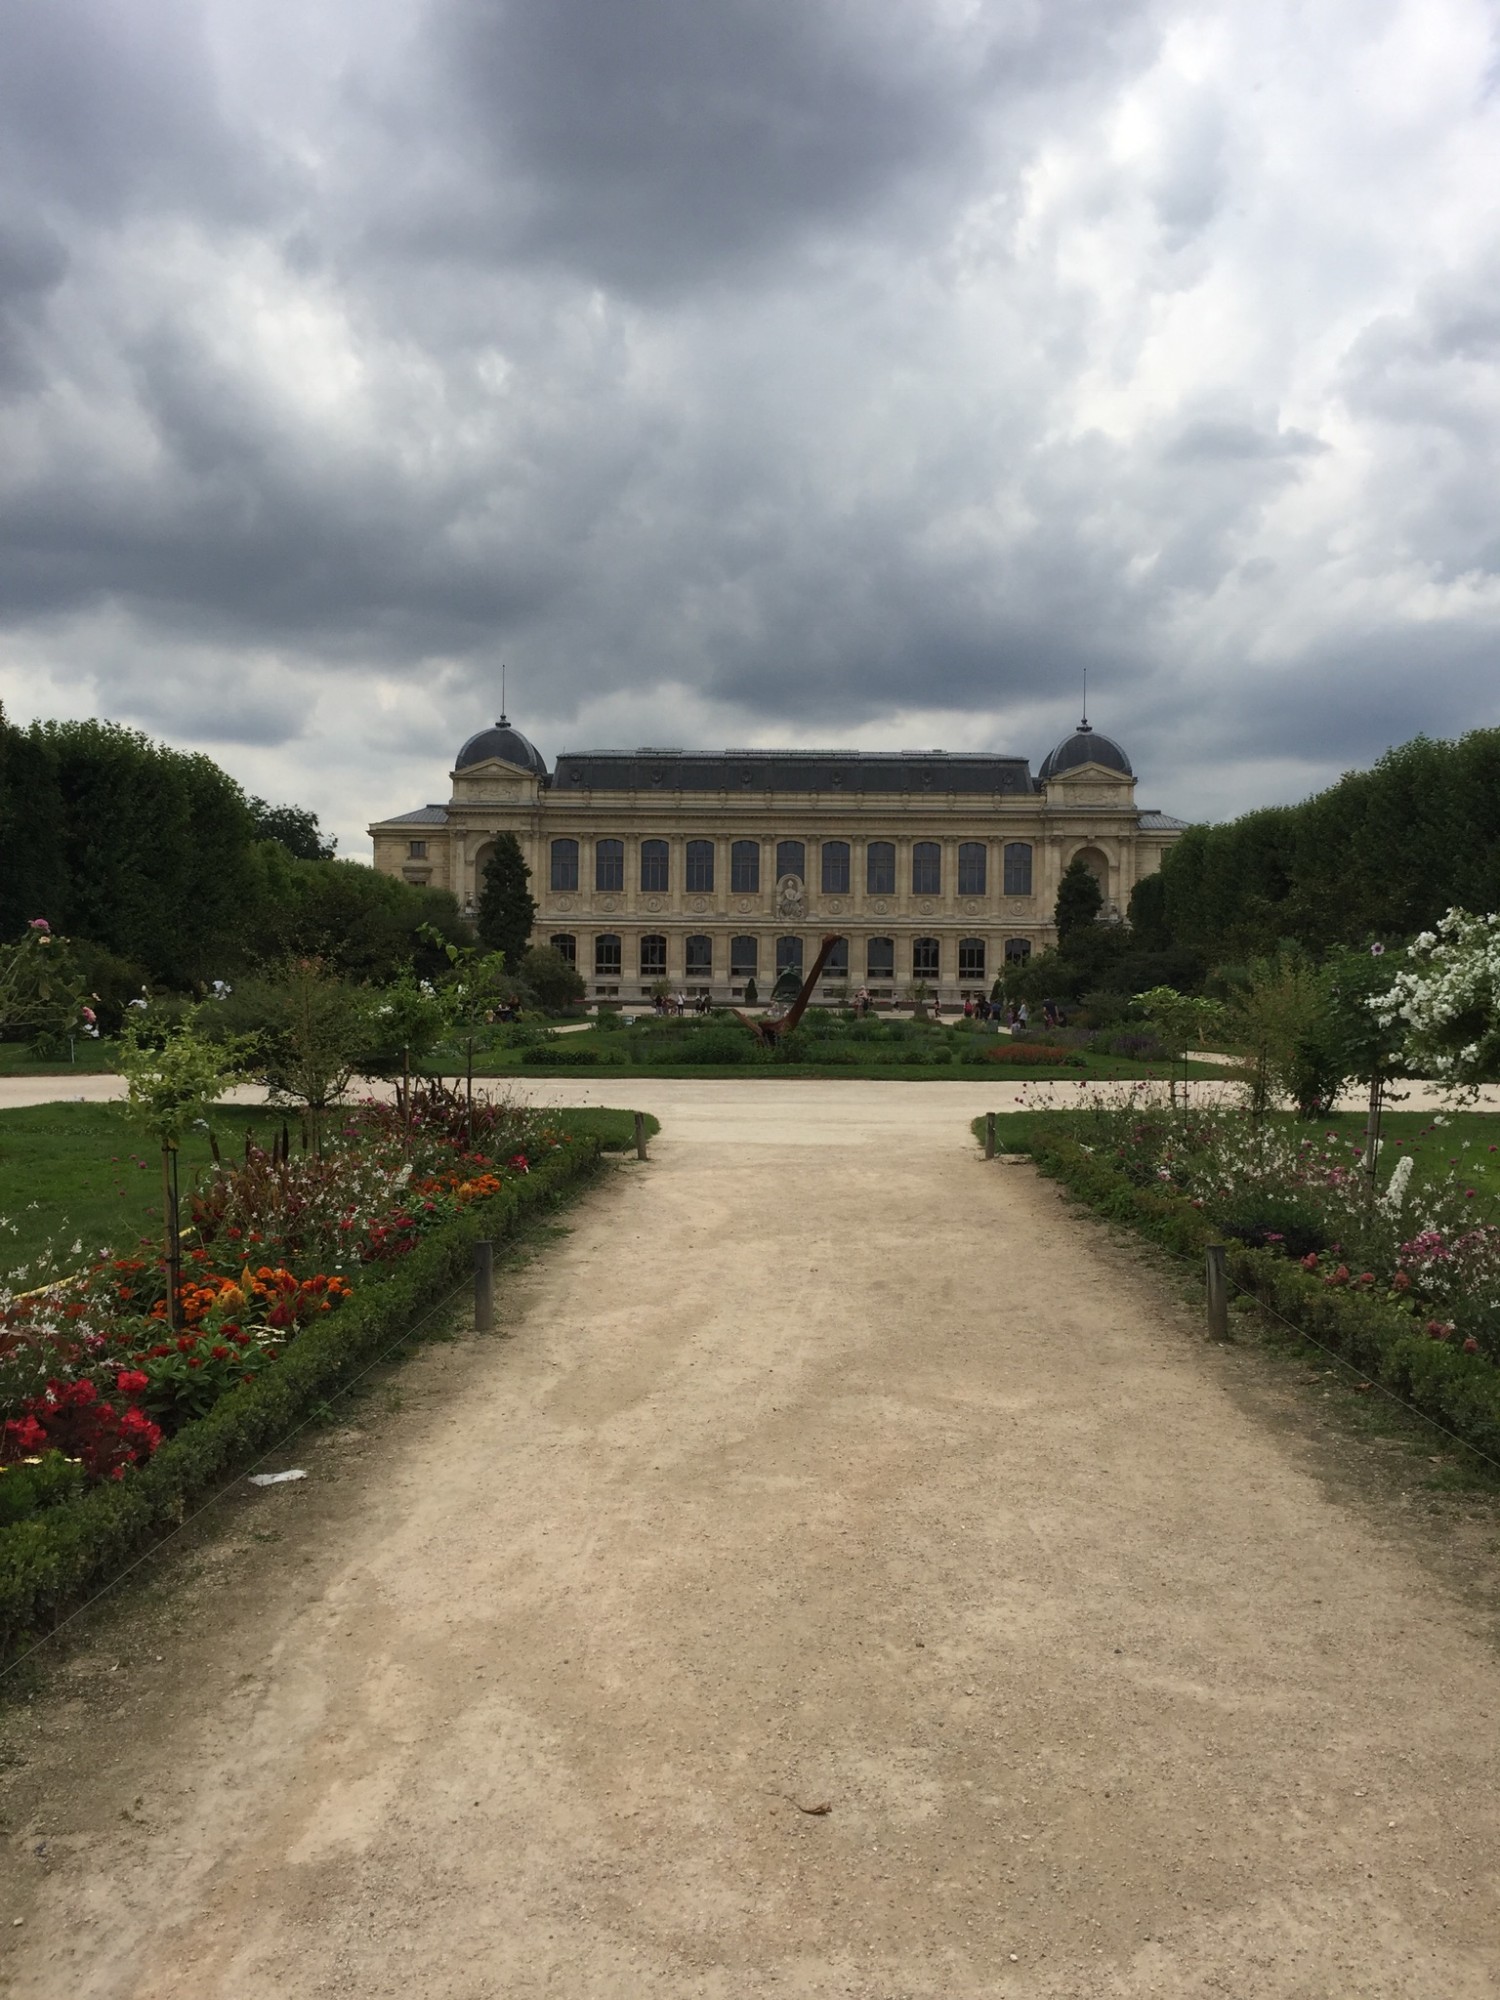 Jardin Des Plantes er Paris' botaniske have